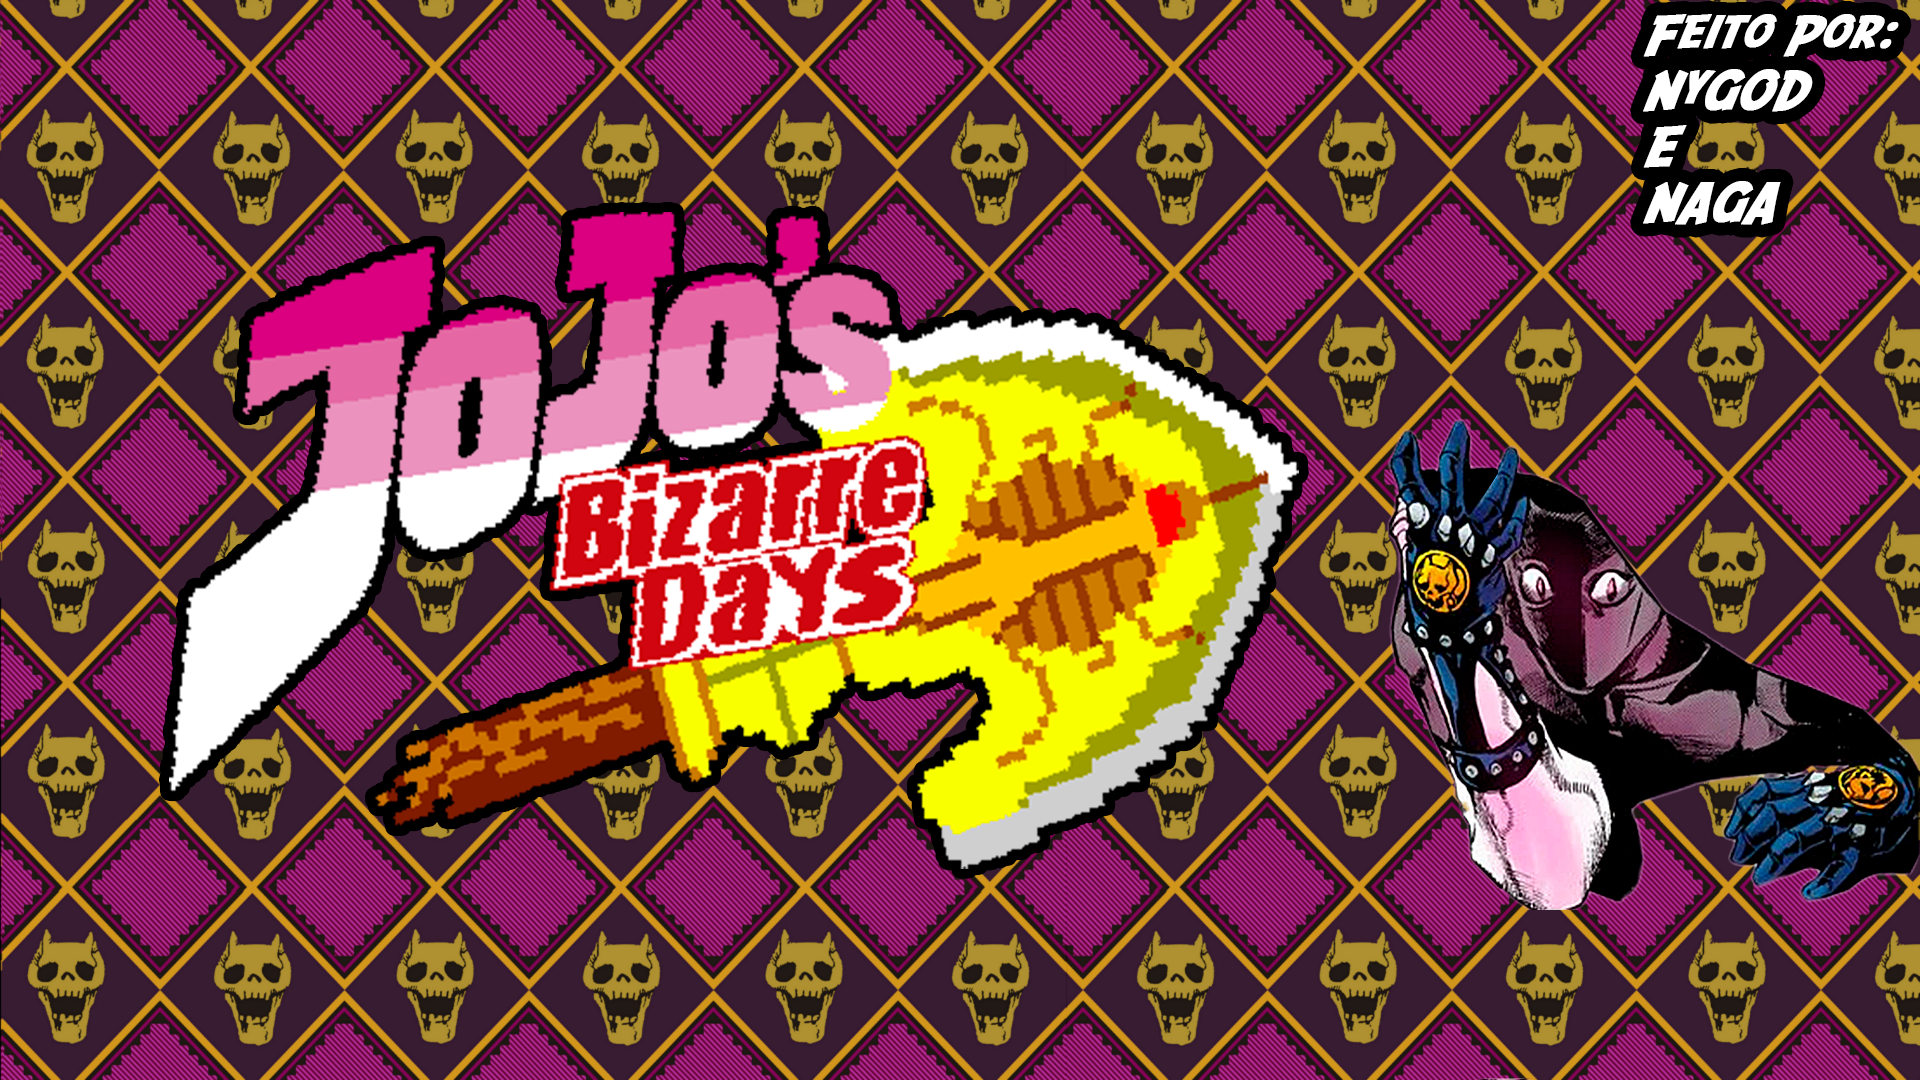 JoJo's Bizarre Days